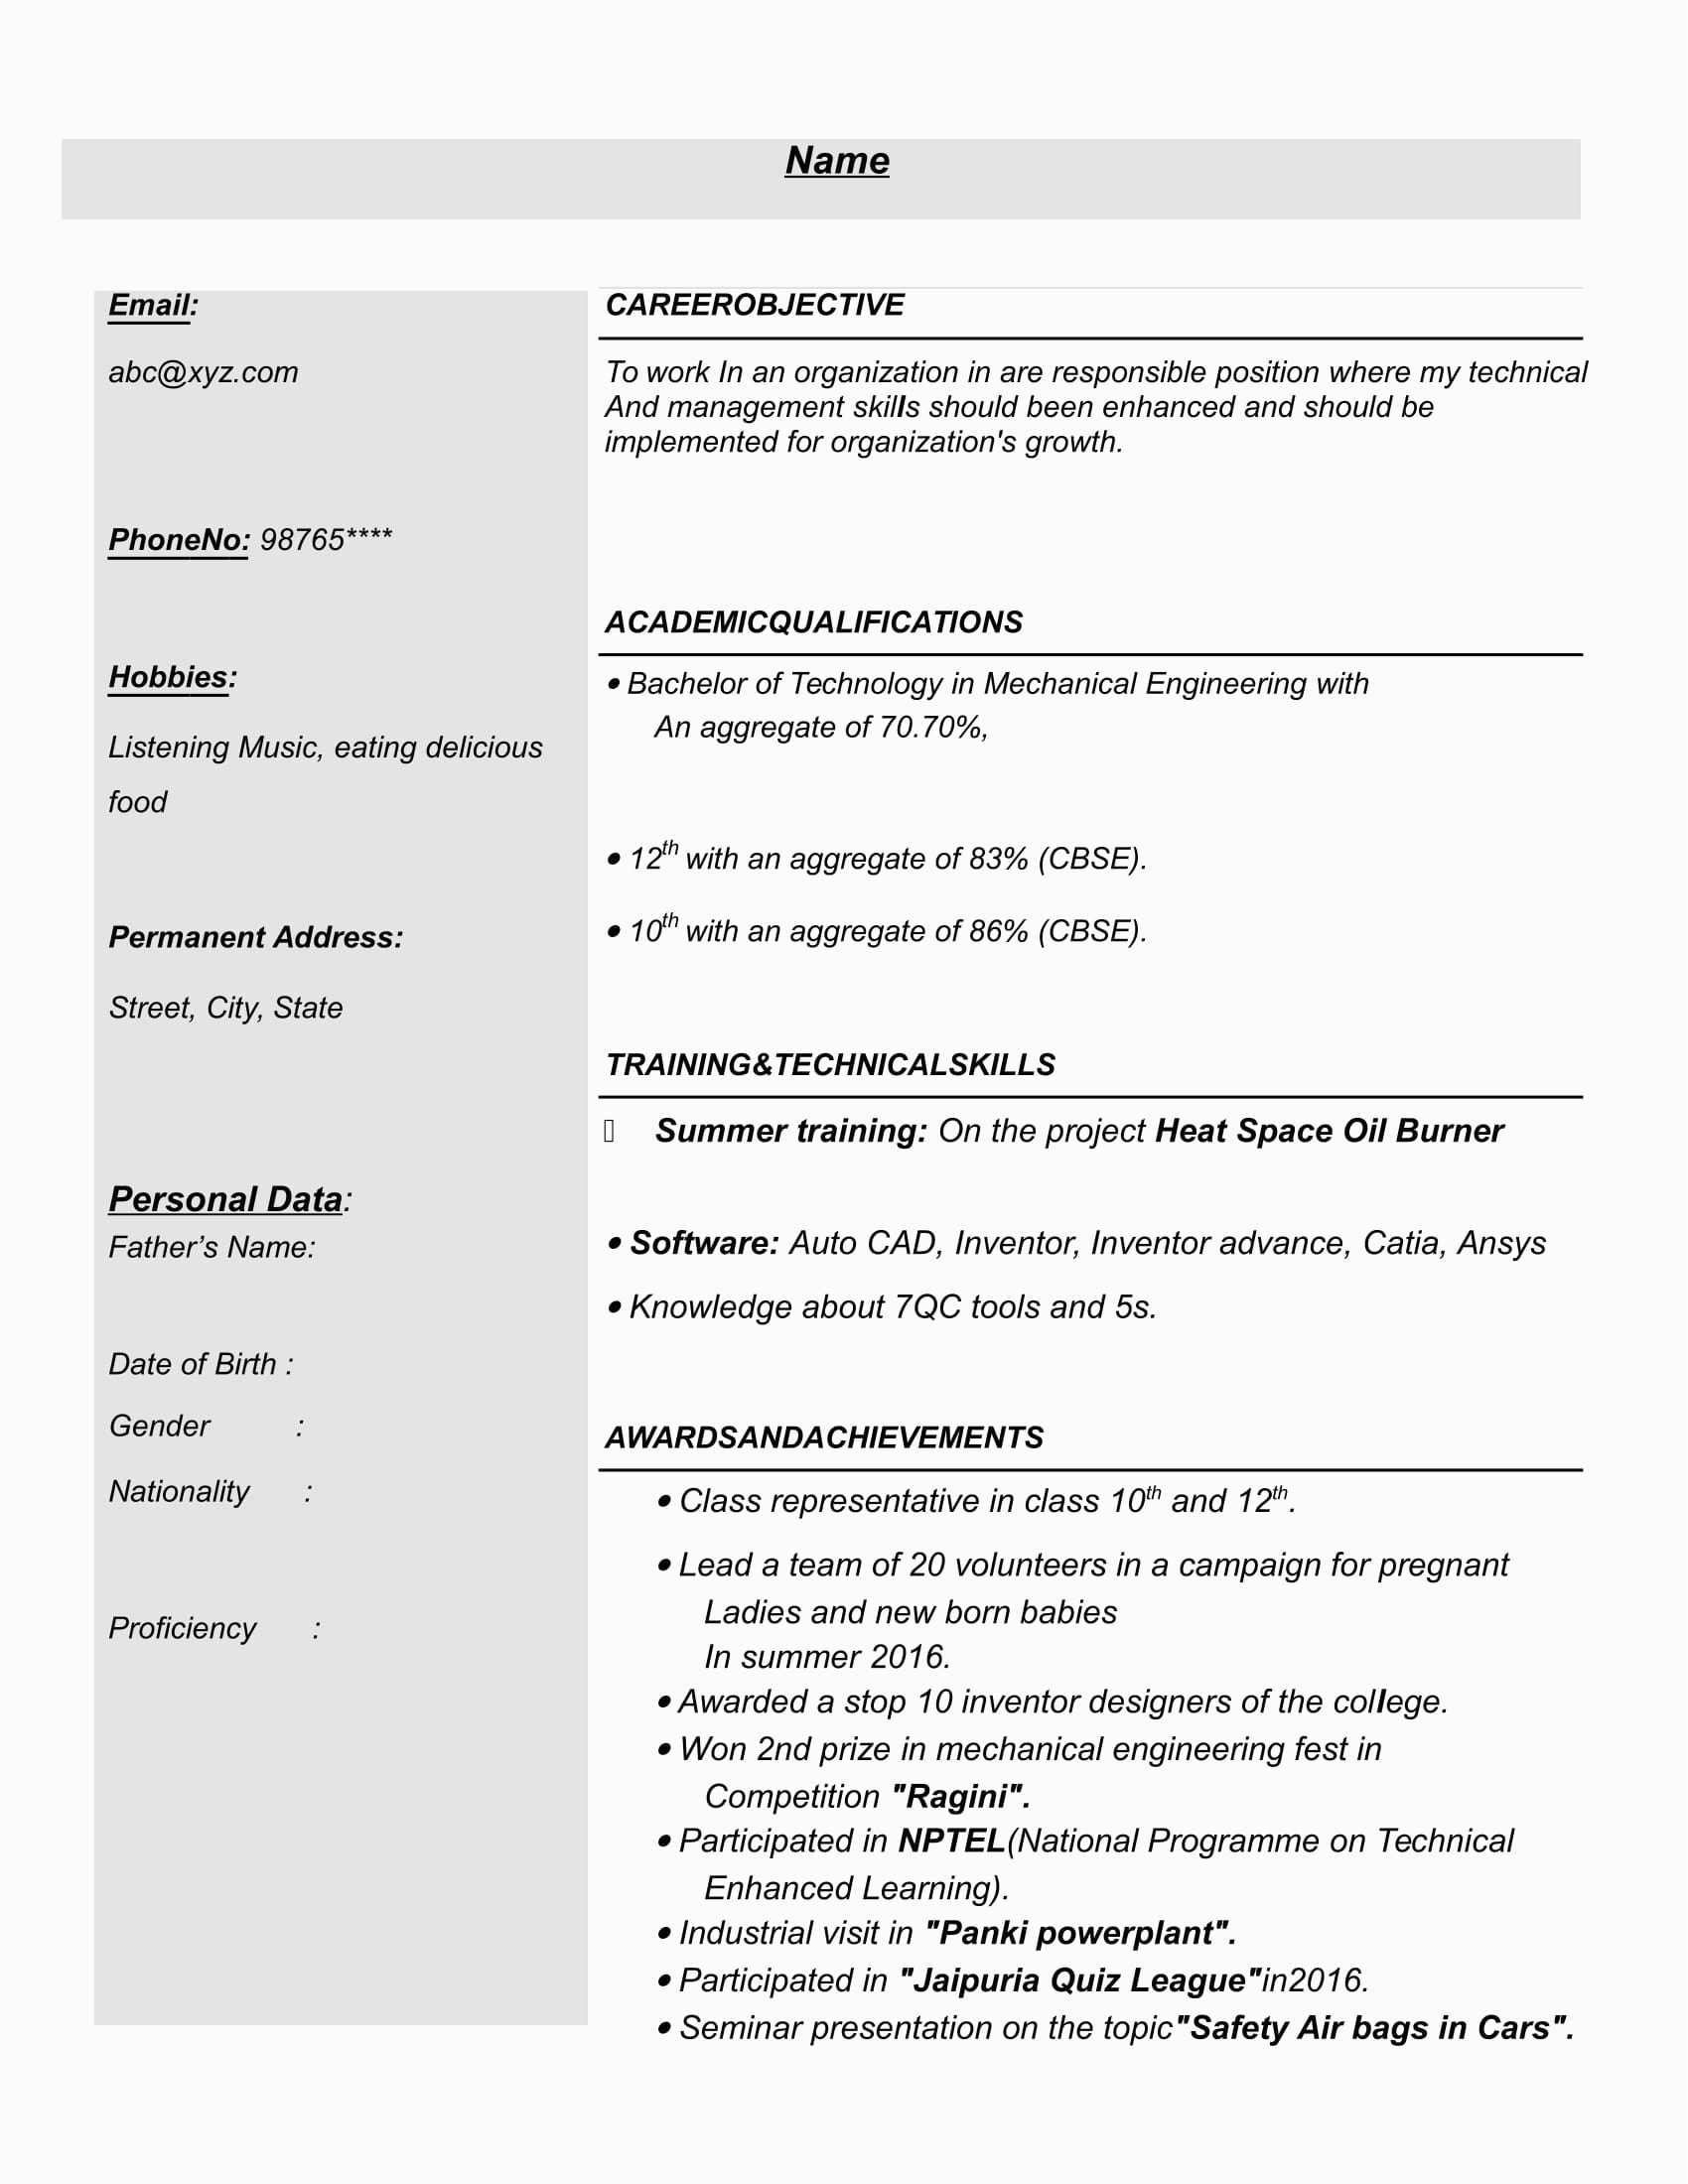 Sample Resume for Mechanical Engineer Fresher Pdf Resume Templates for Mechanical Engineer Freshers